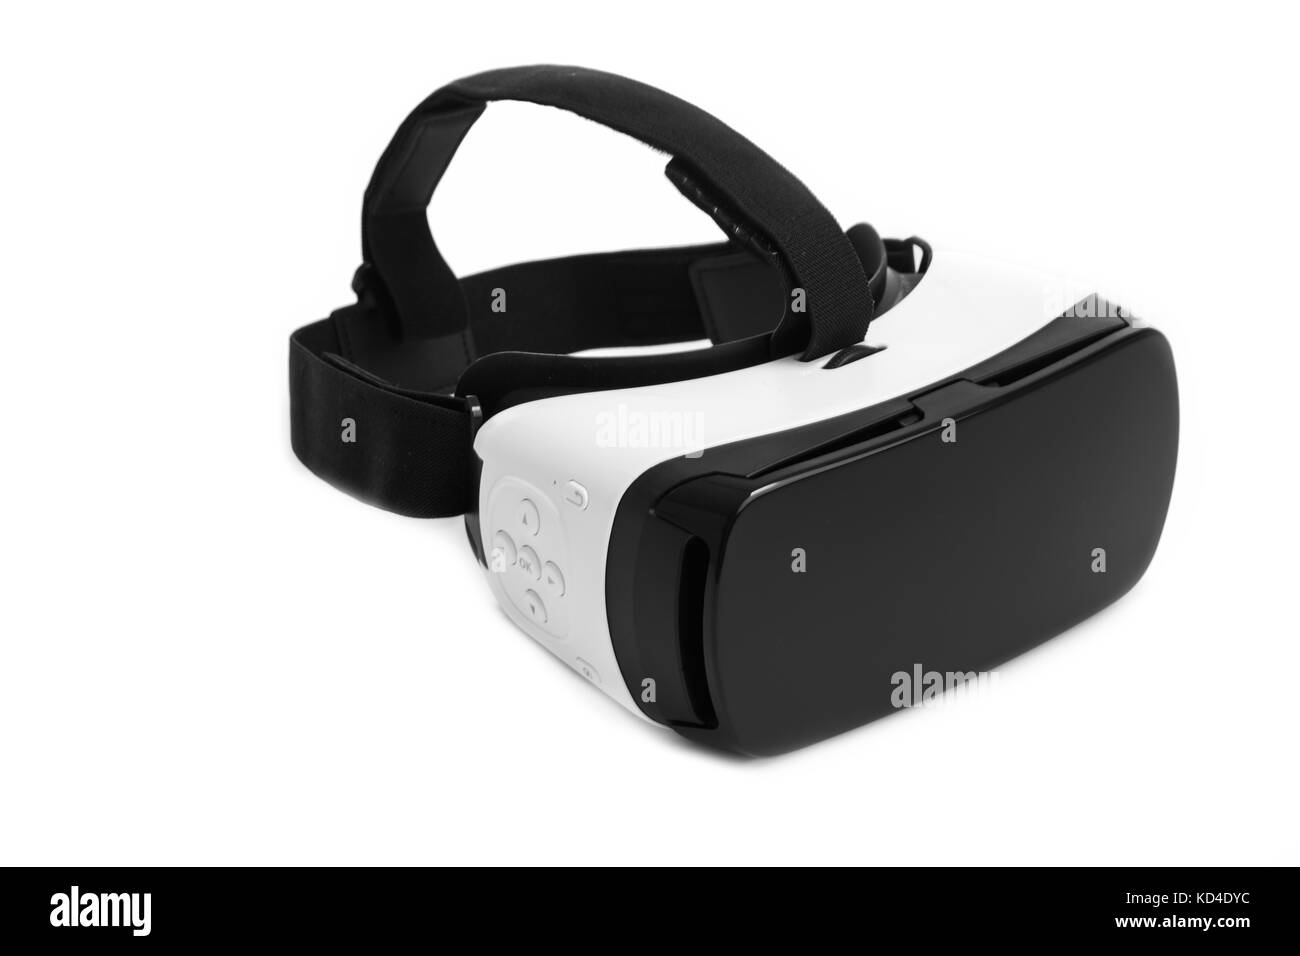 Vr occhiali per realtà virtuale. La realtà virtuale occhiali, isolati su sfondo bianco. Foto Stock